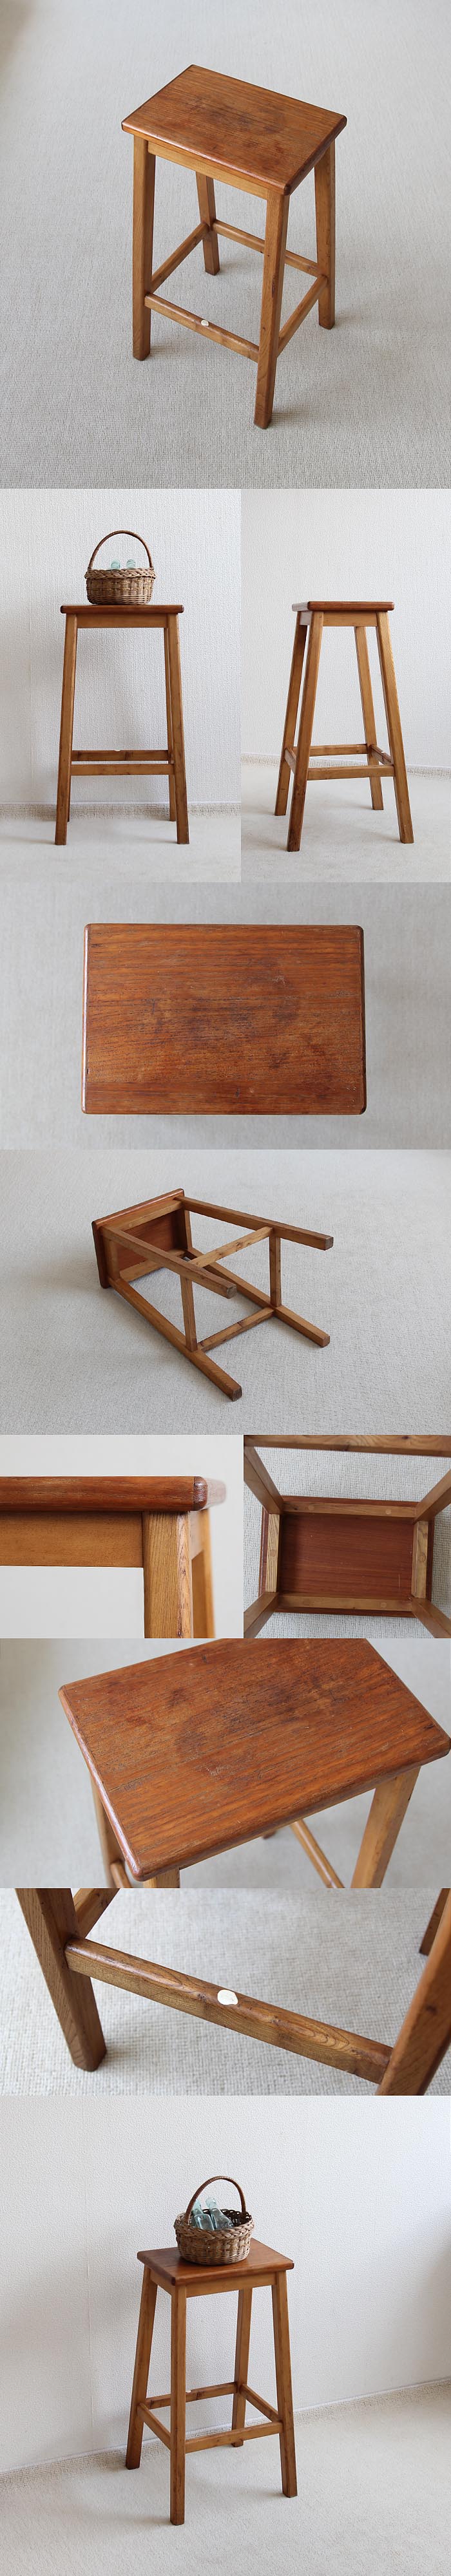 イギリス アンティーク ハイスツール 木製椅子 カウンターチェア 飾り台 家具 V-340